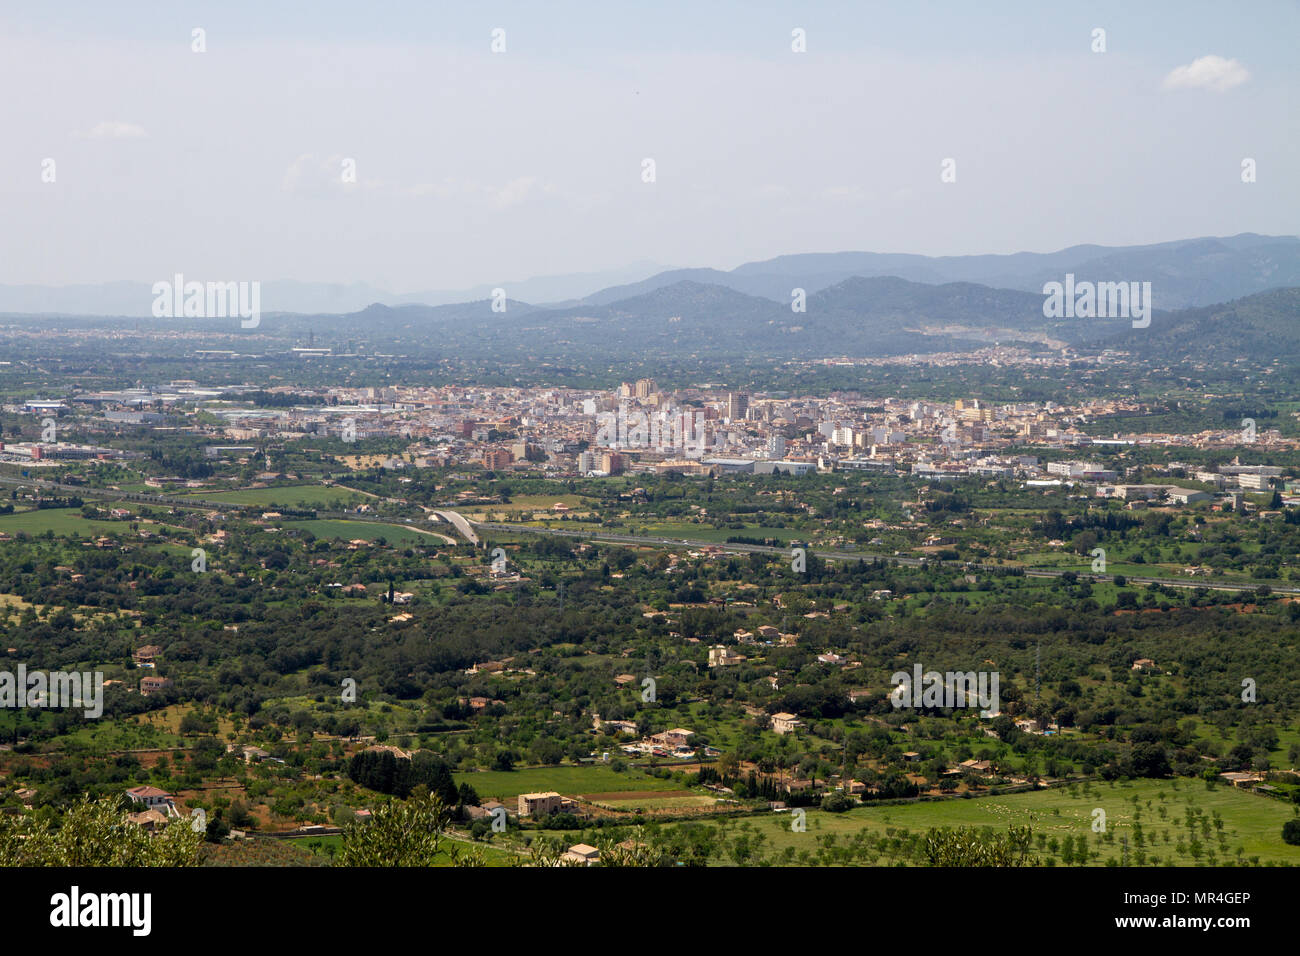 INCA town hi view, from Puig santa Magdalena, Mallorca Spain Stock Photo